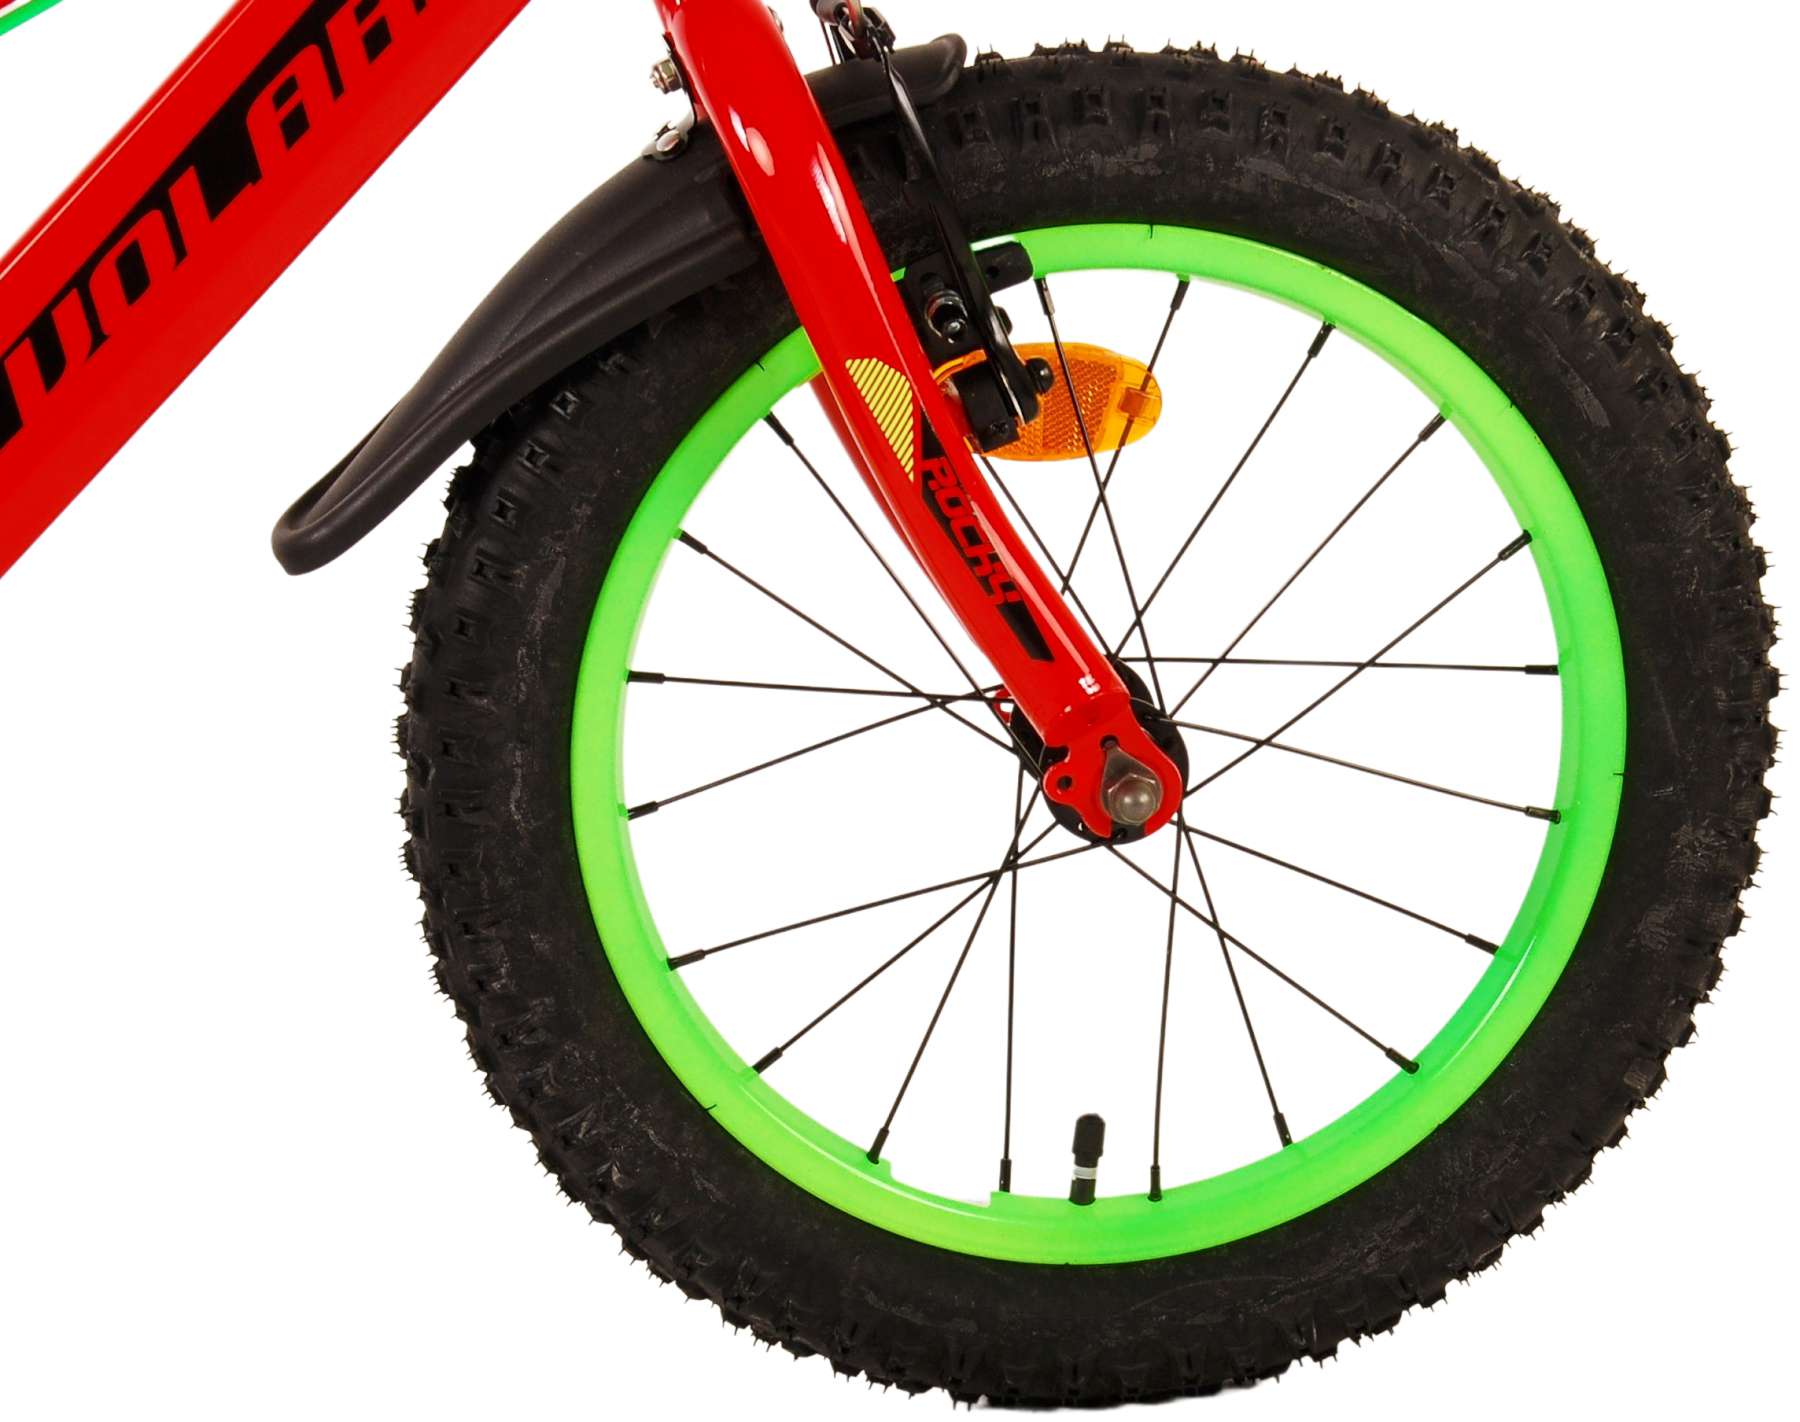 Kinderfahrrad Rocky Fahrrad für Jungen 16 Zoll Kinderrad in Rot